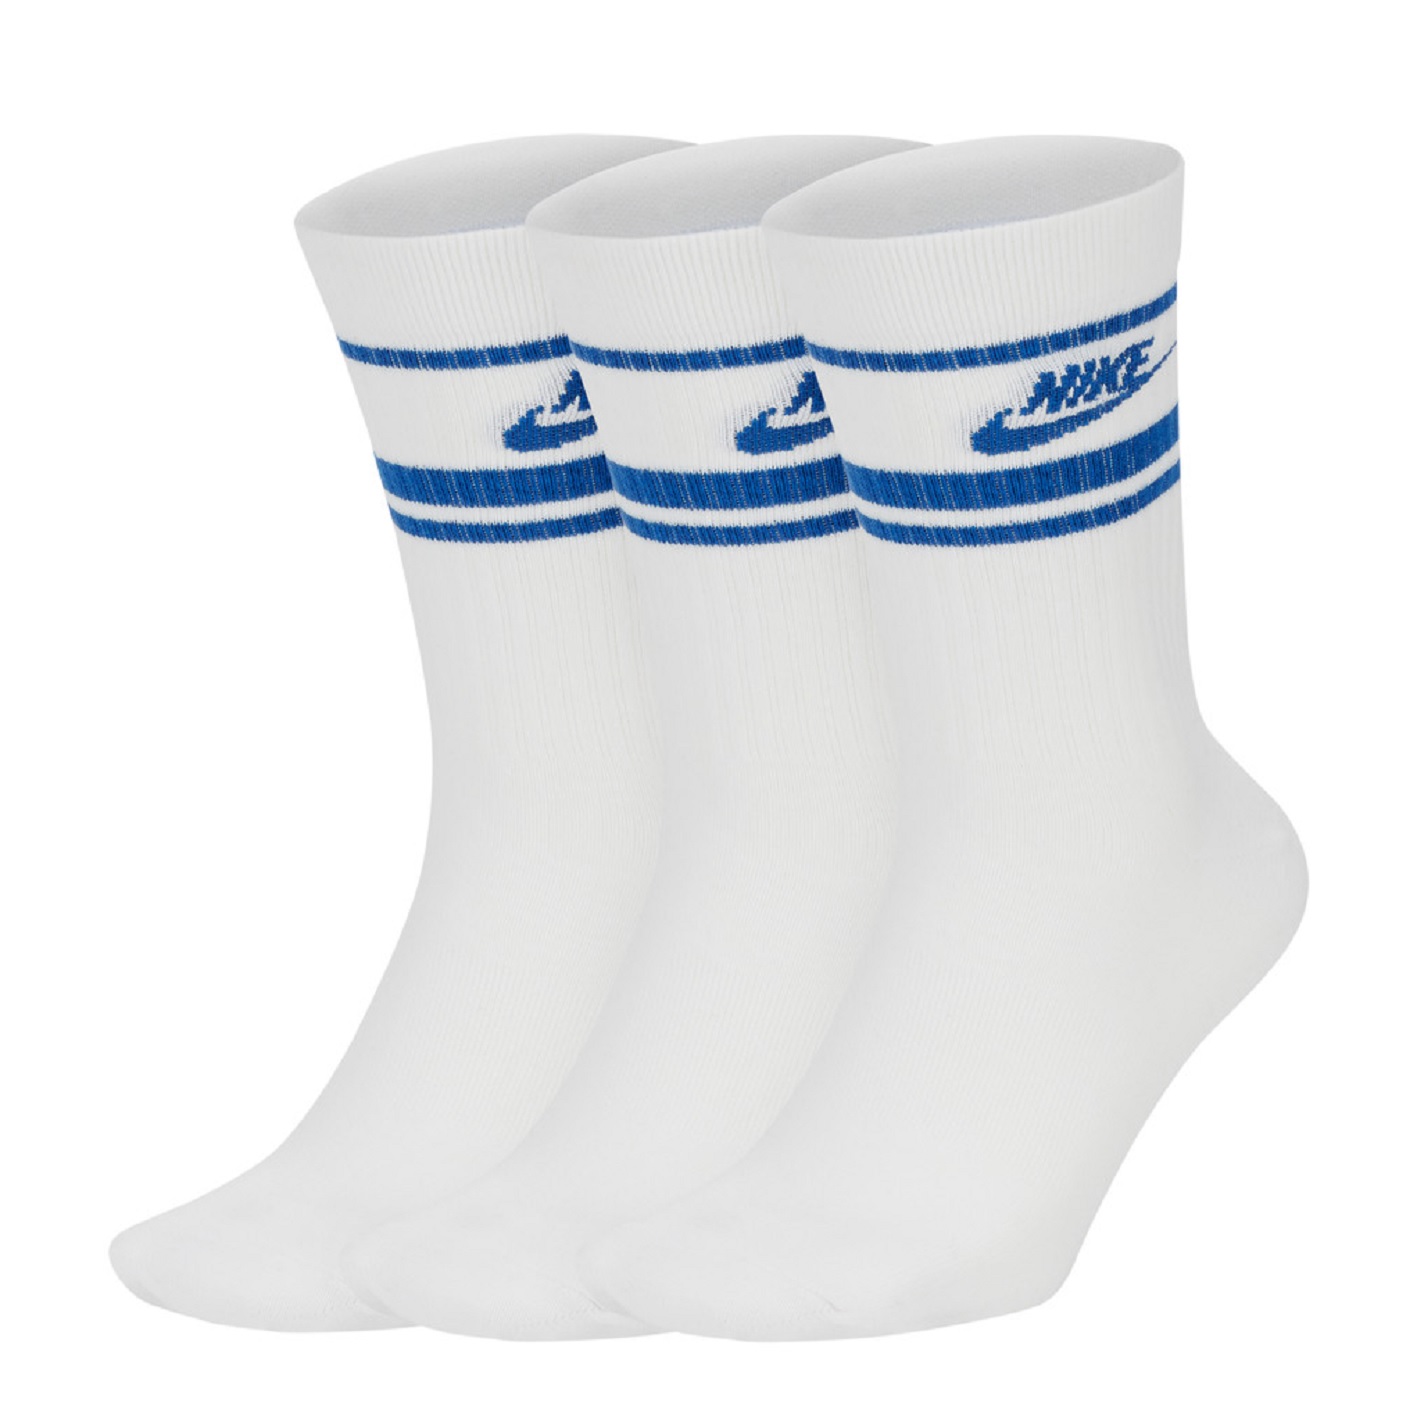 ☆ Nike Essential Stripe Crew Socken 3er Pack weiß/blau - hier bestellen!